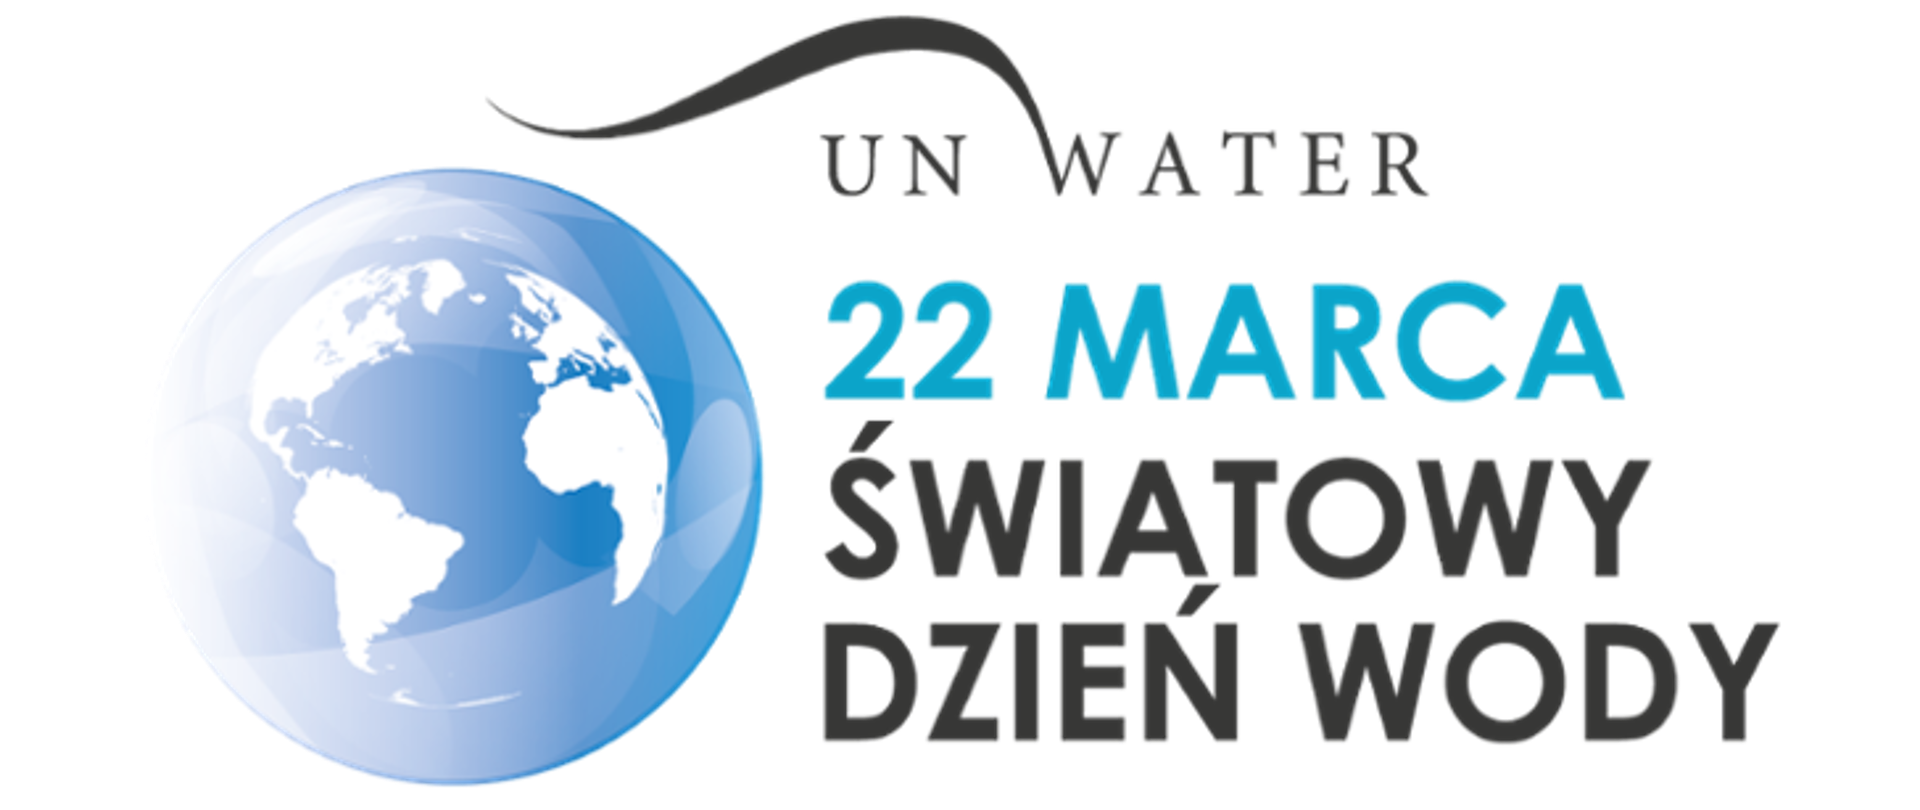 22 marca Światowy Dzień wody 